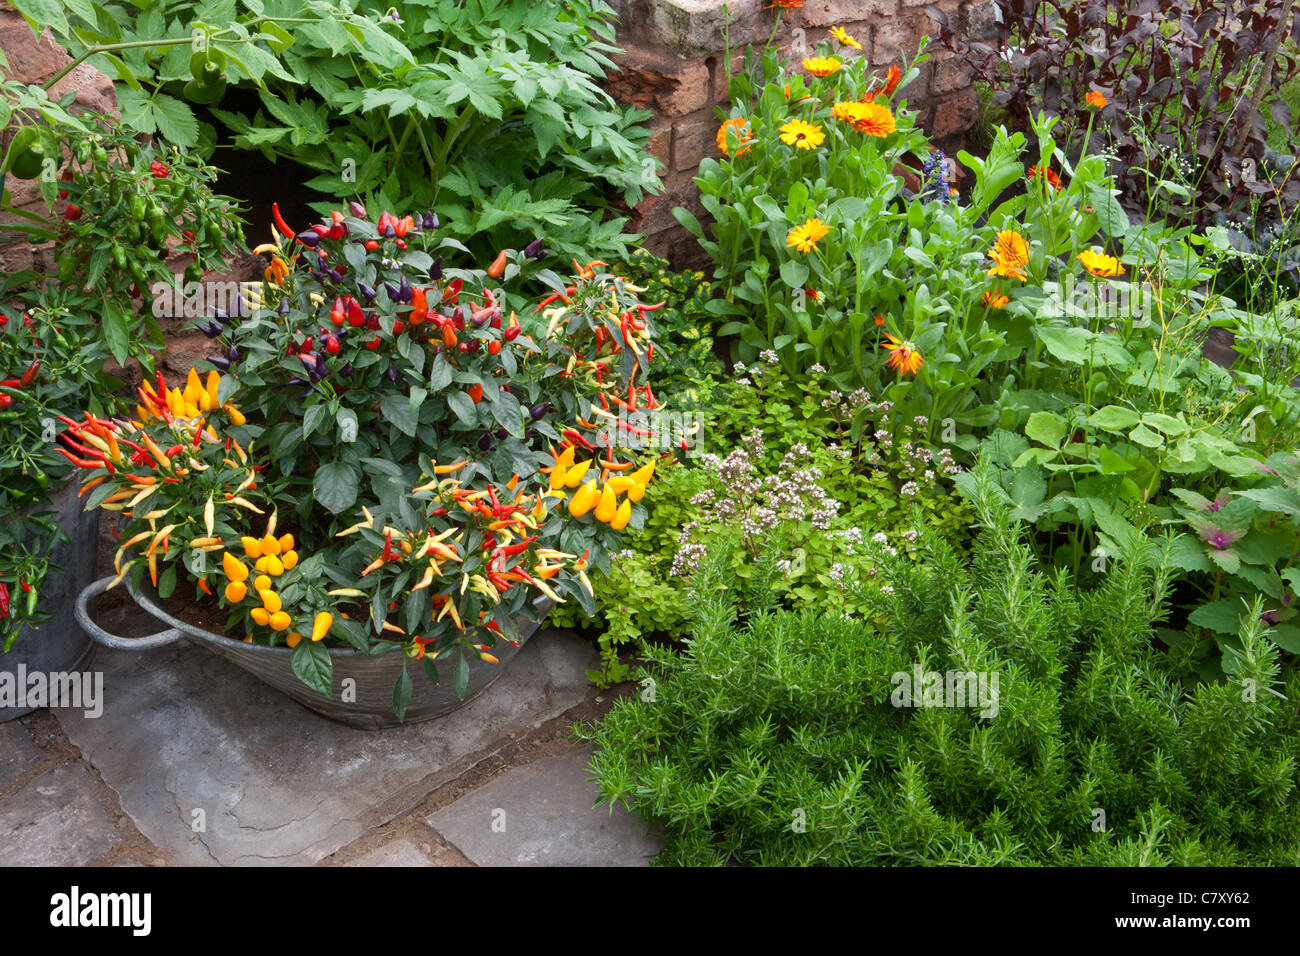 Pequeño espacio jardín con chiles chiles chile pimiento plantas creciendo en un recipiente de metal galvanizado planta al aire libre Reino Unido Foto de stock